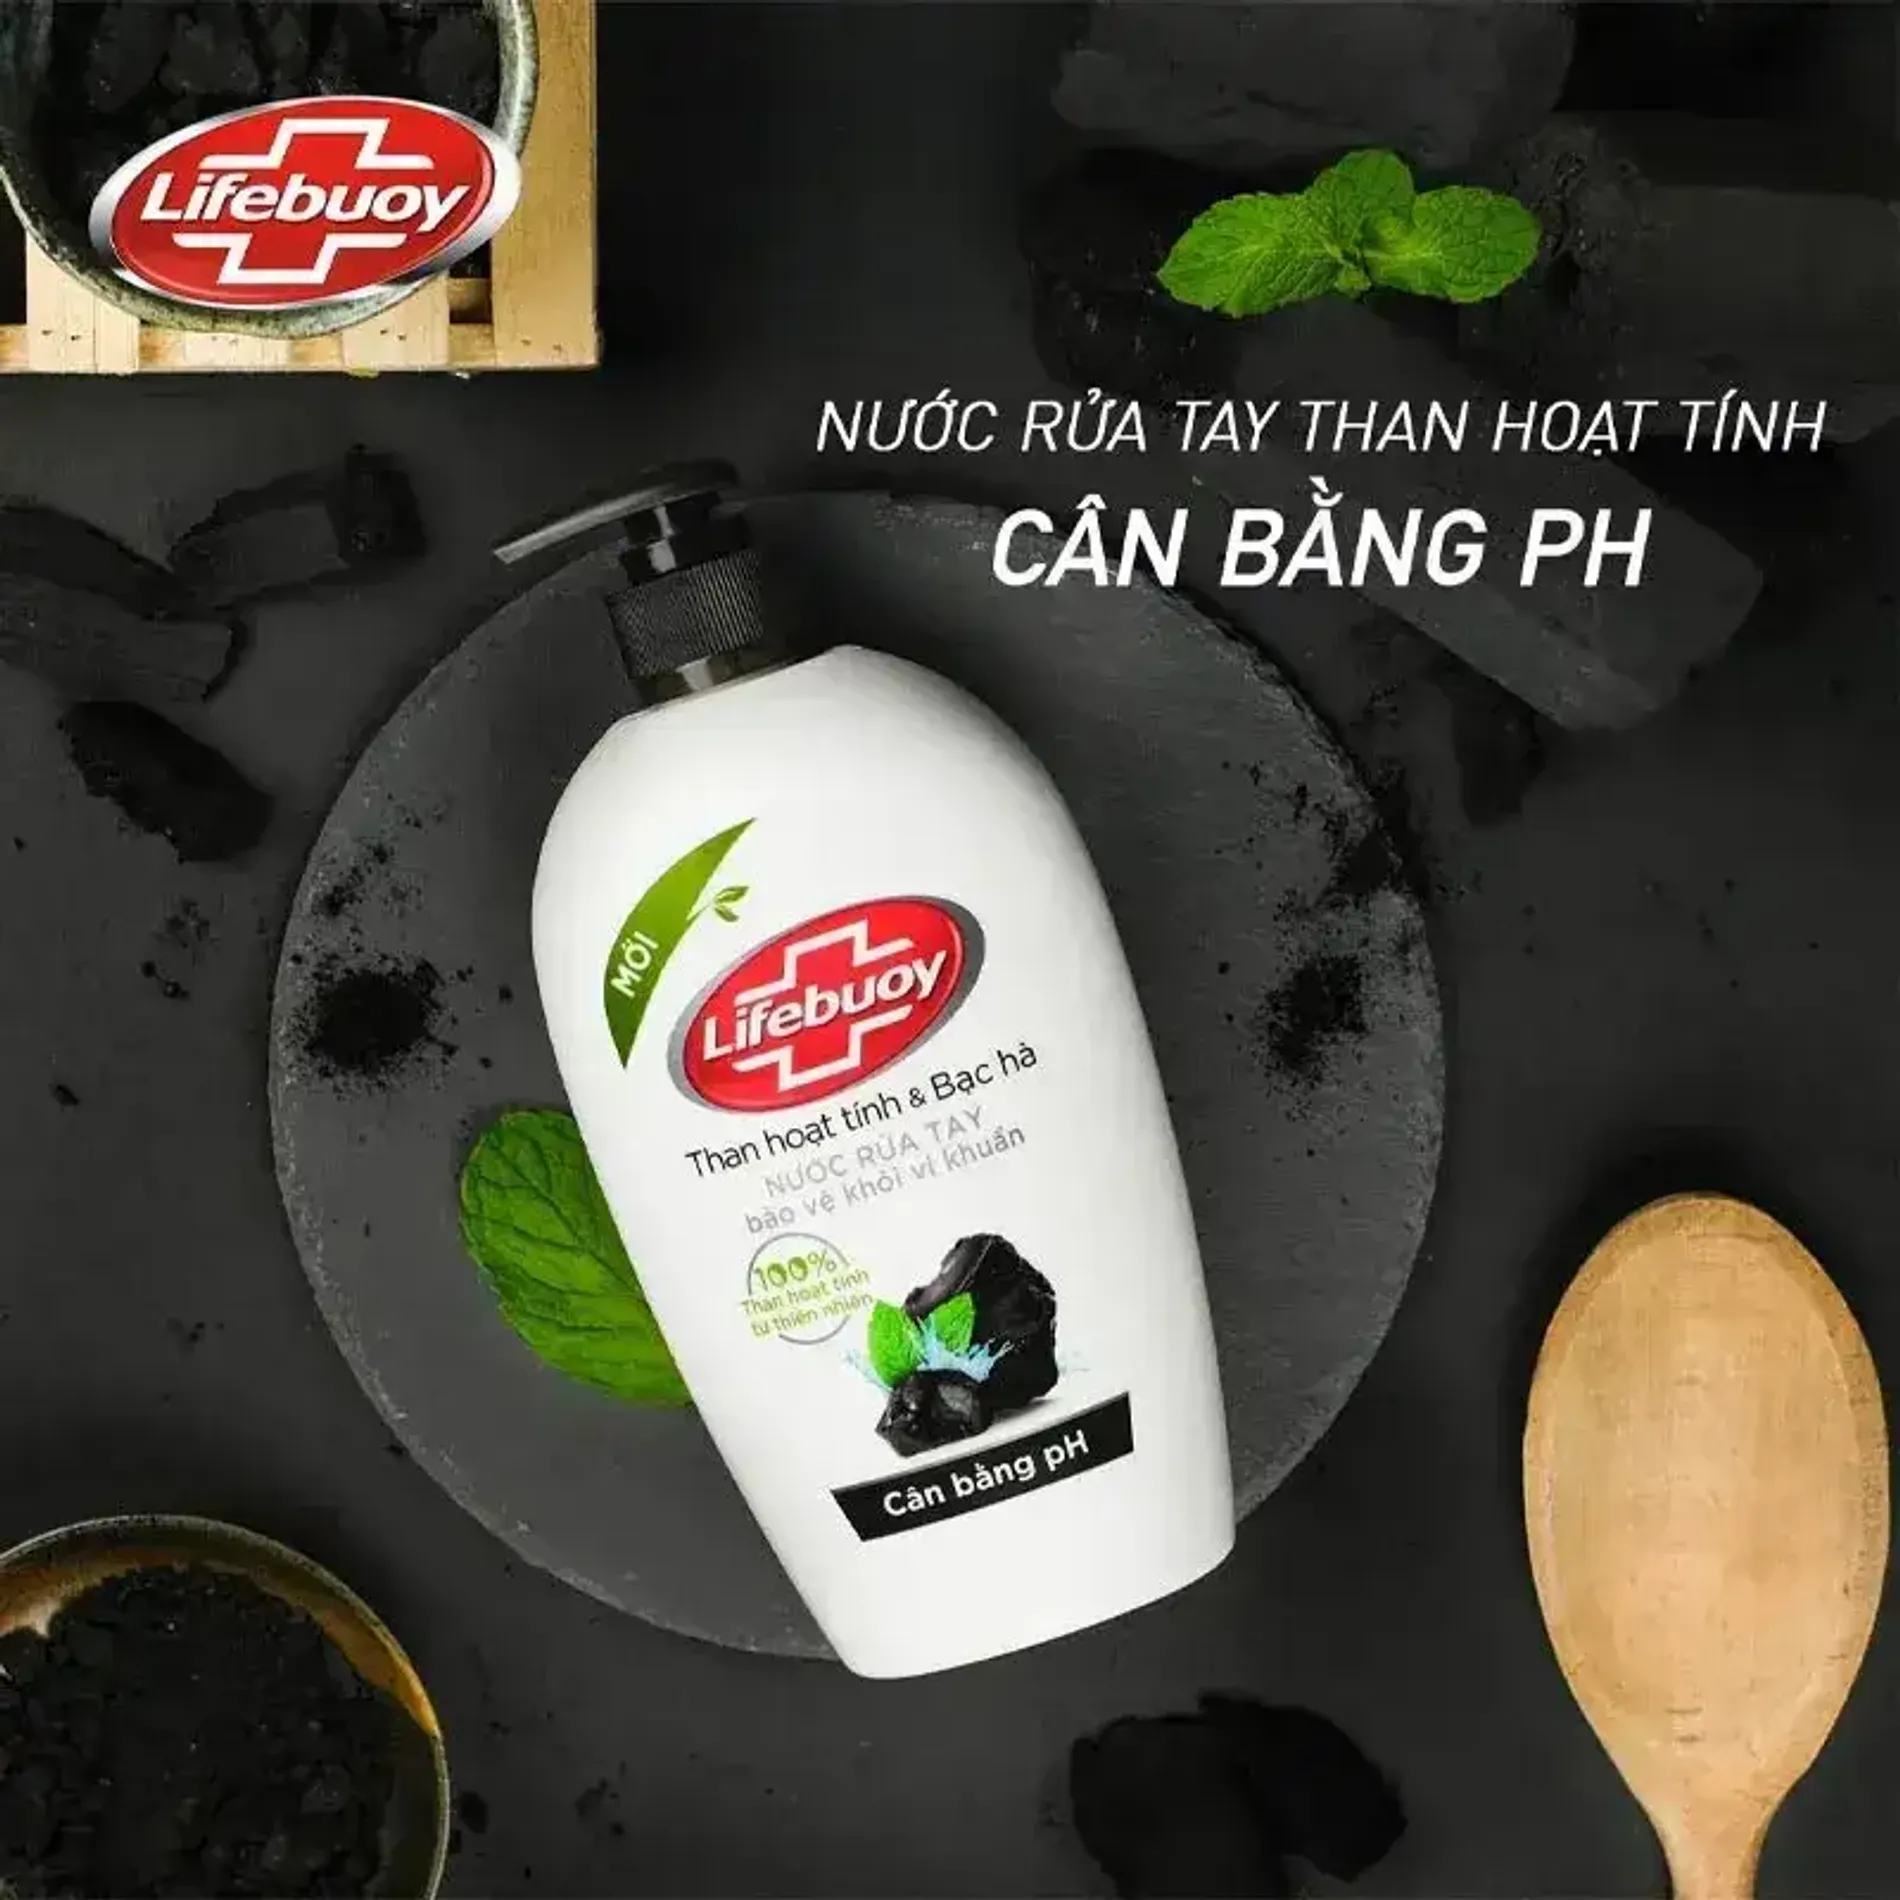 nuoc-rua-tay-than-hoat-tinh-va-bac-ha-lifebuoy-liquid-hand-soap-charcoal-mint-4